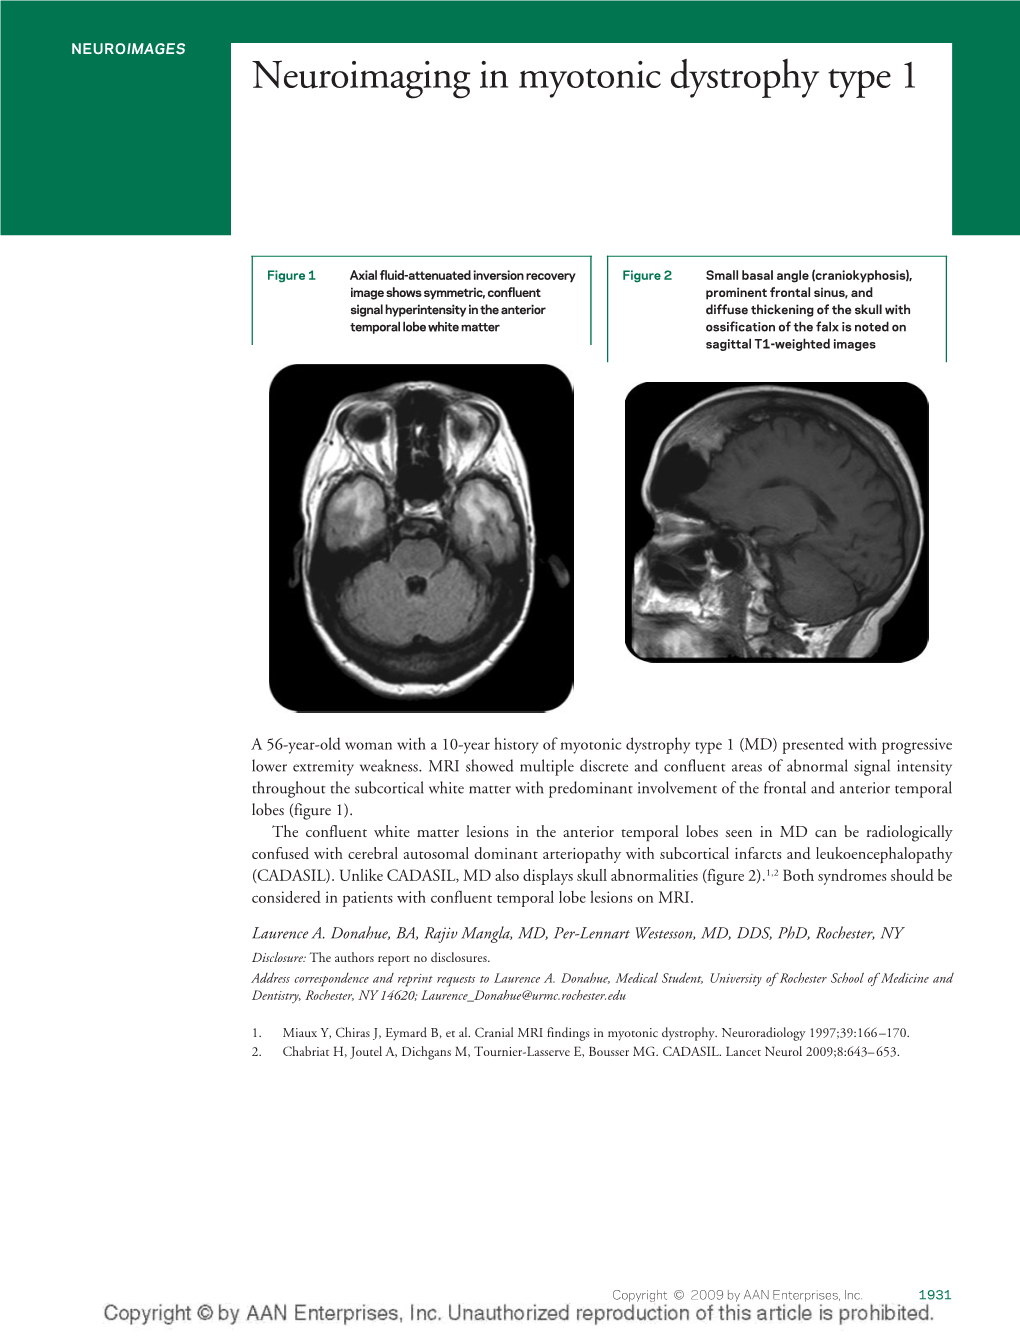 Neuroimaging in Myotonic Dystrophy Type 1